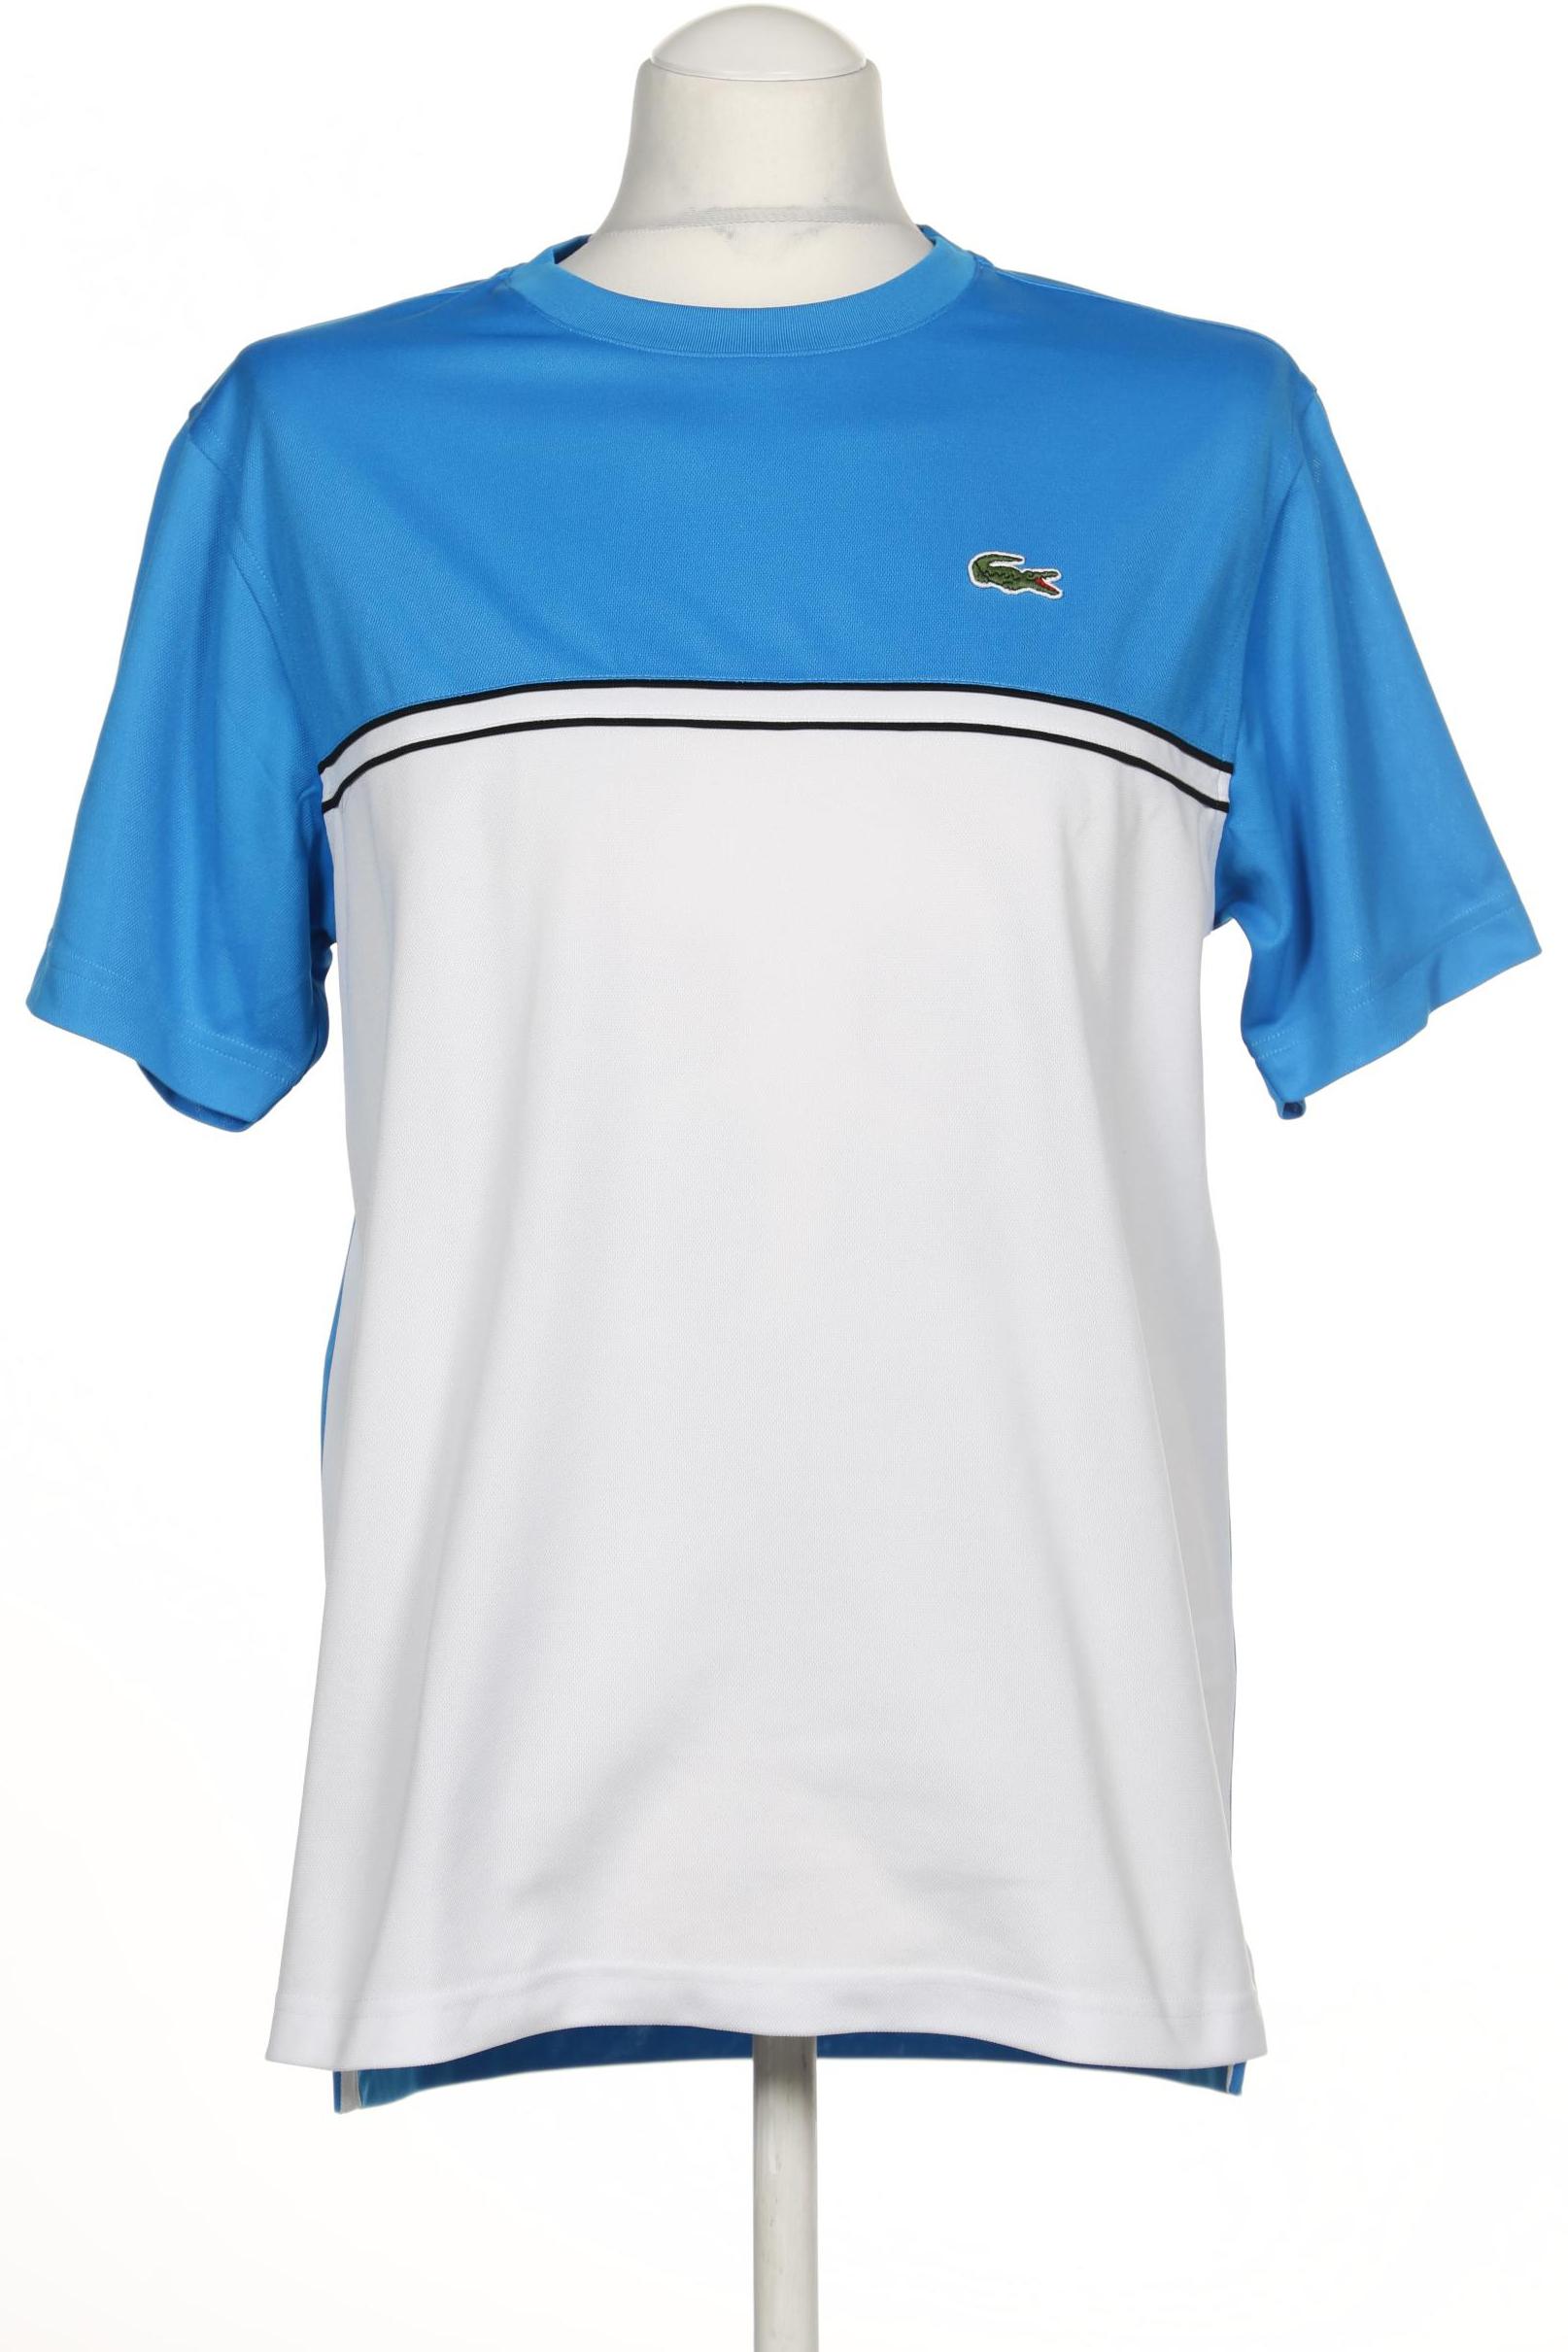 Lacoste Sport Herren T-Shirt, blau von Lacoste Sport